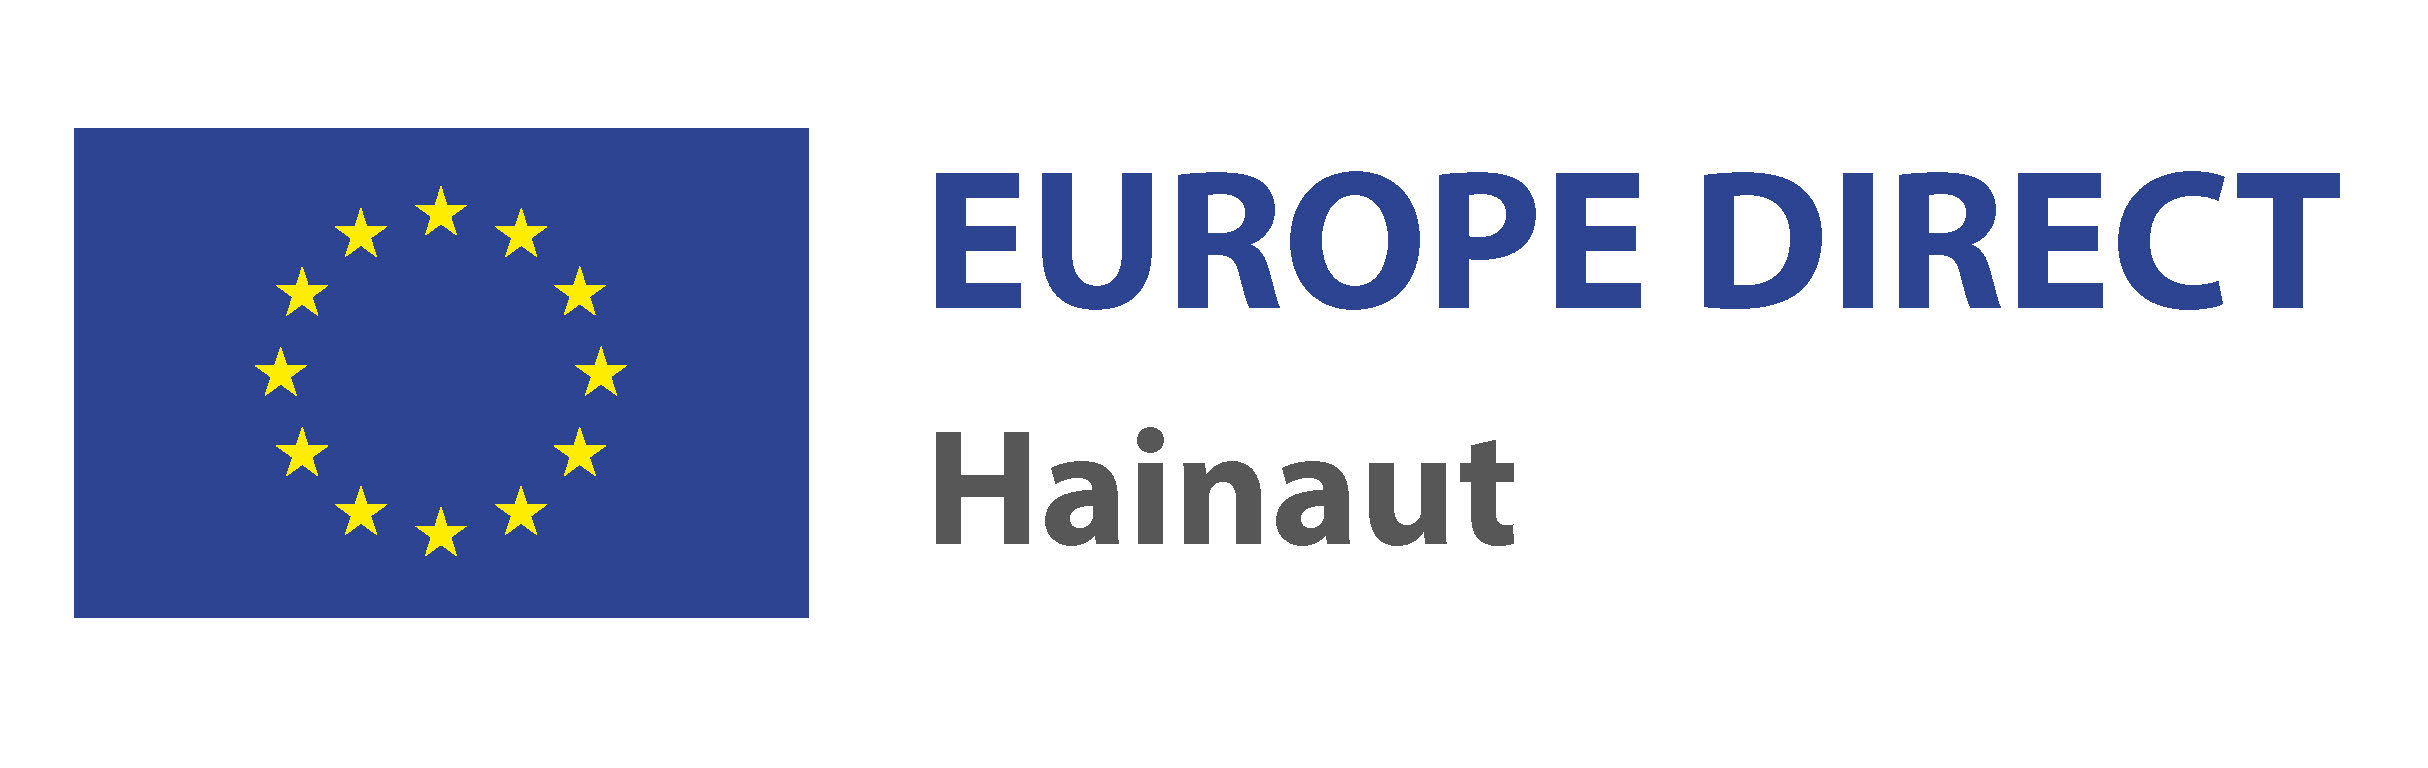 EUROPE DIRECT Hainaut Logo